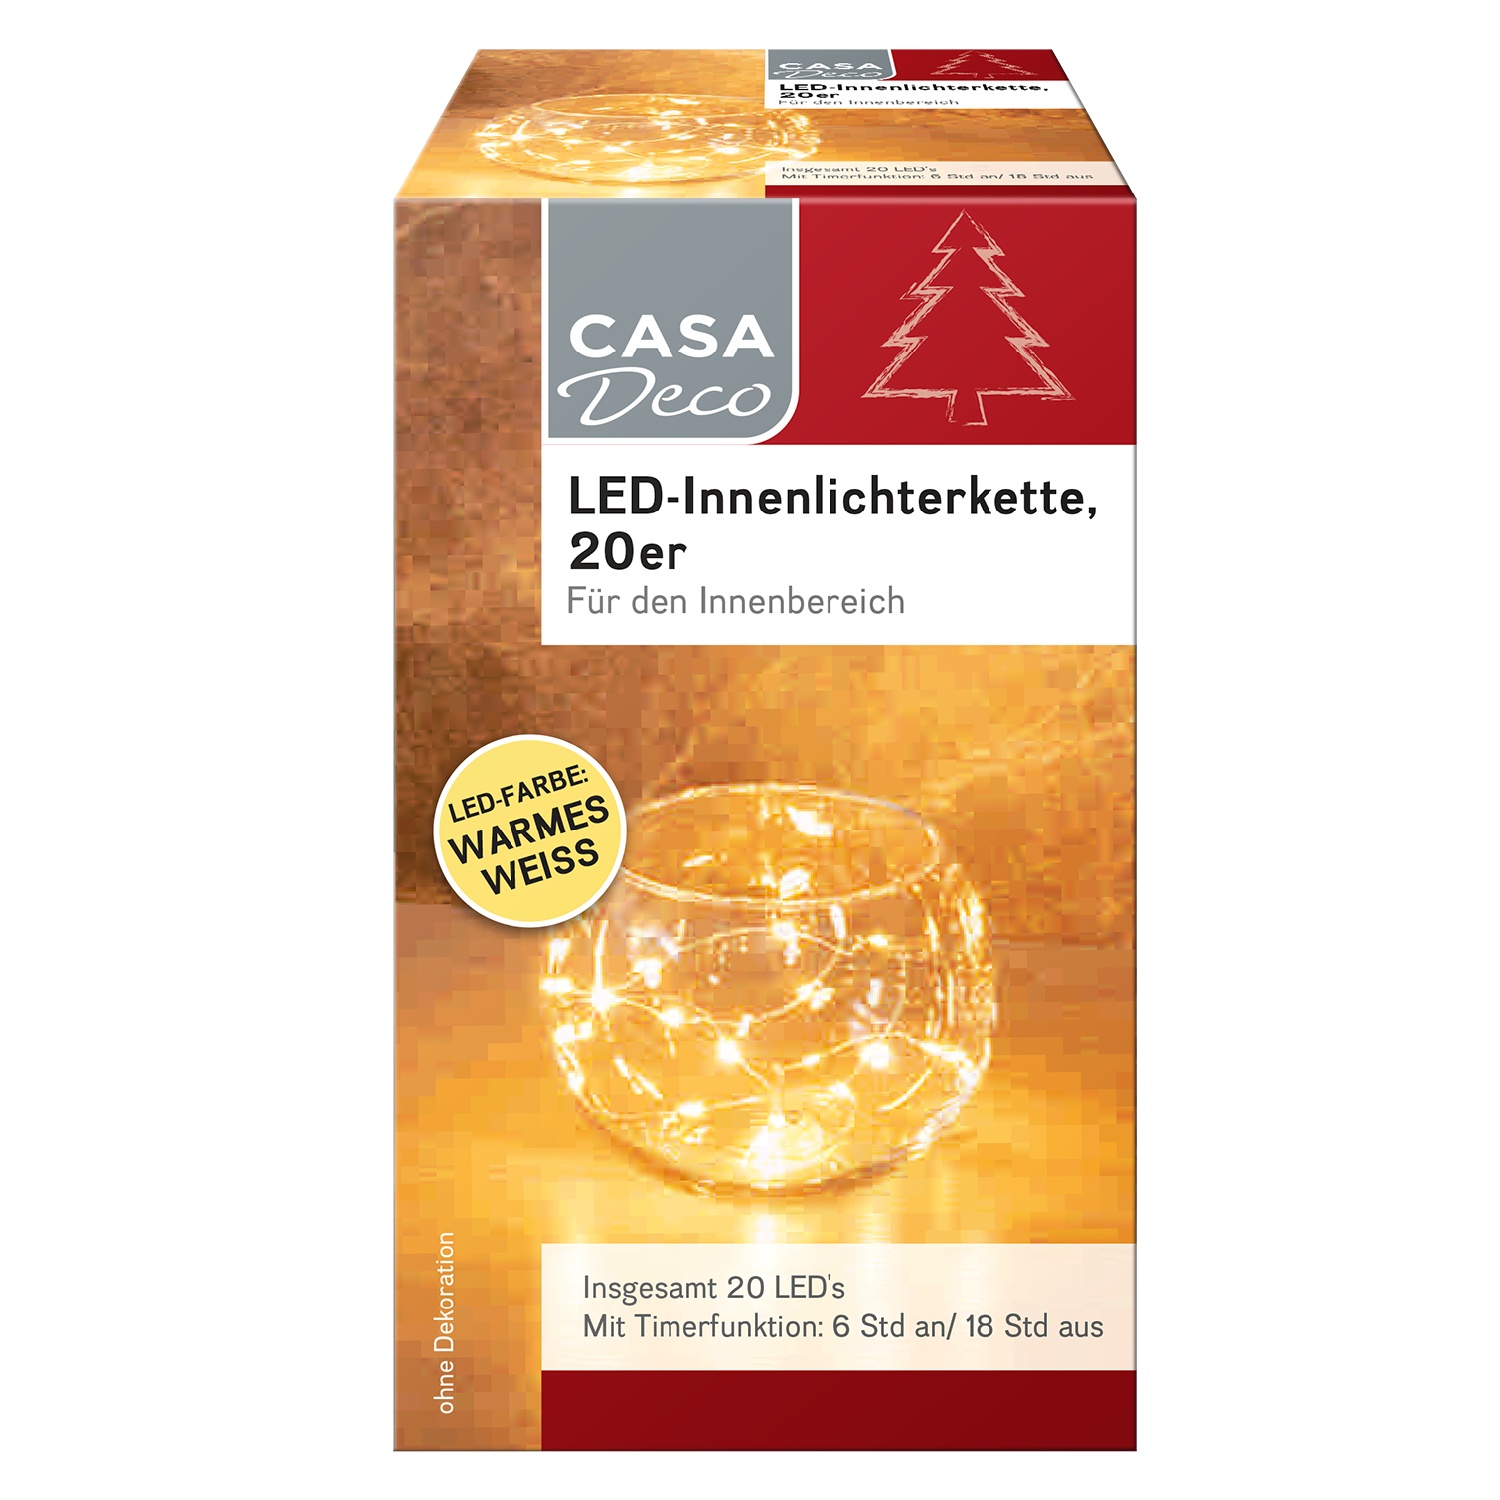 CASA Deco LED-Innenlichterkette